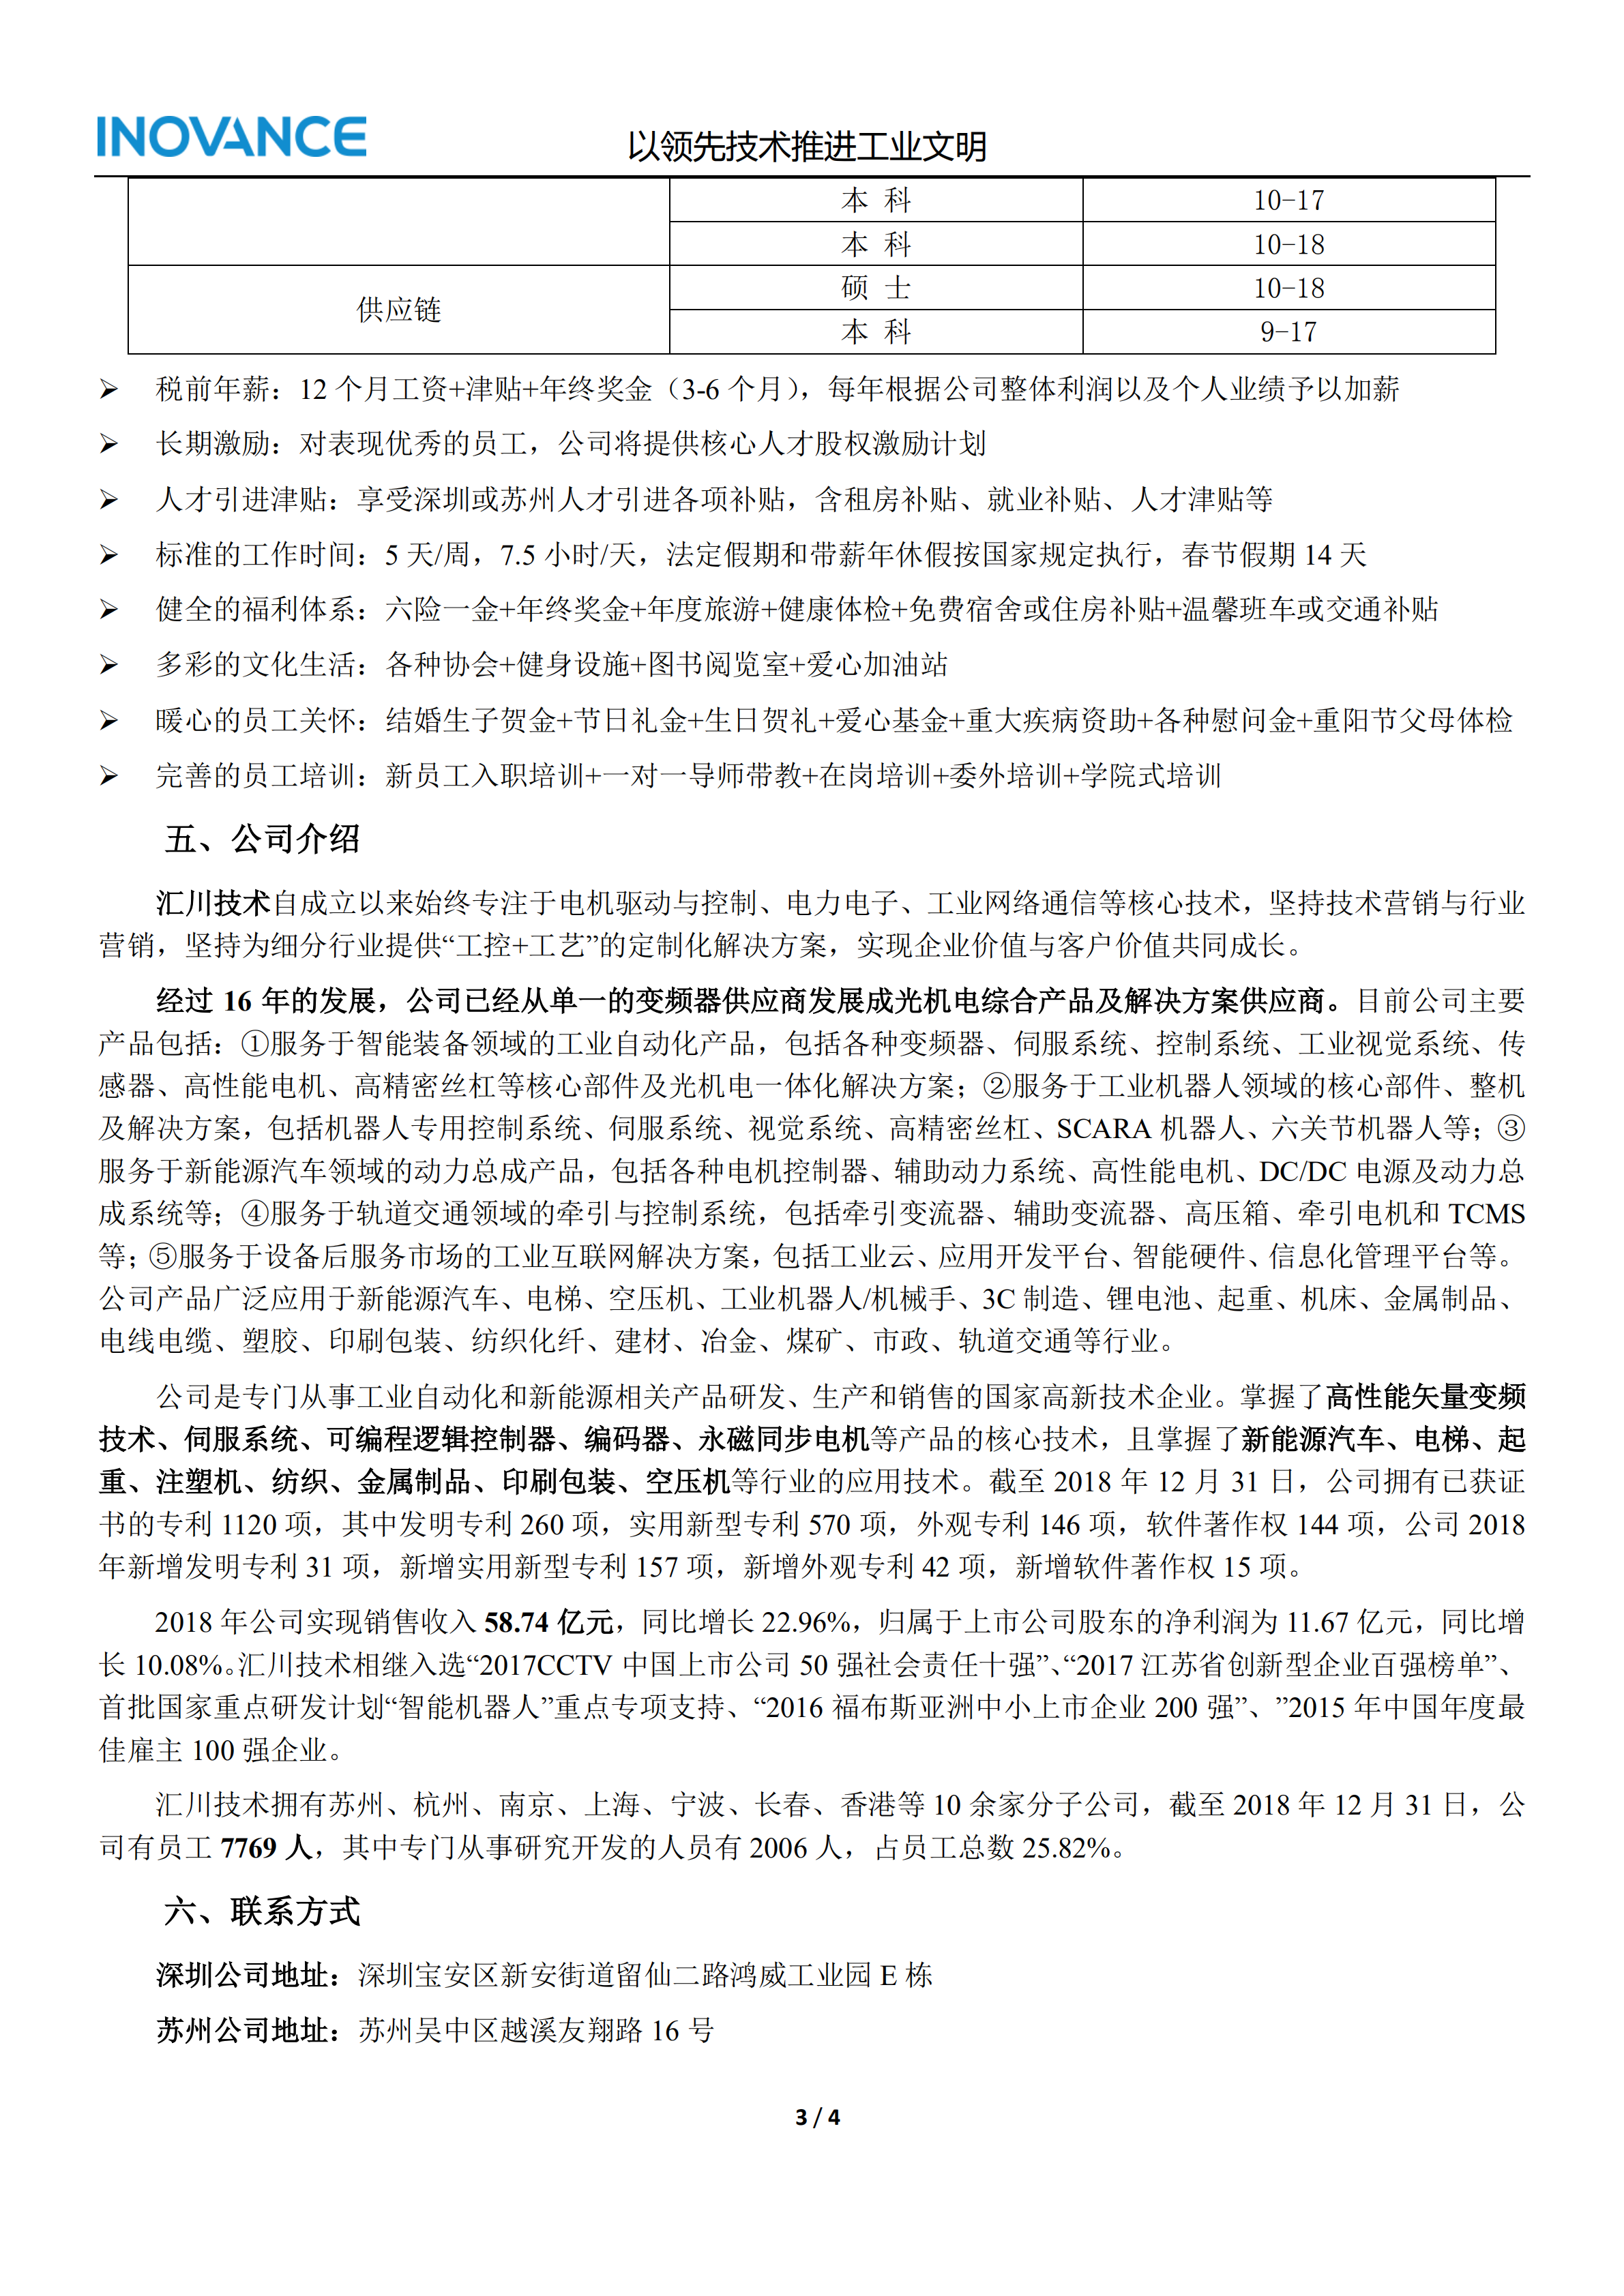 汇川技术2020校招简章—上海电机学院(1)_02.png